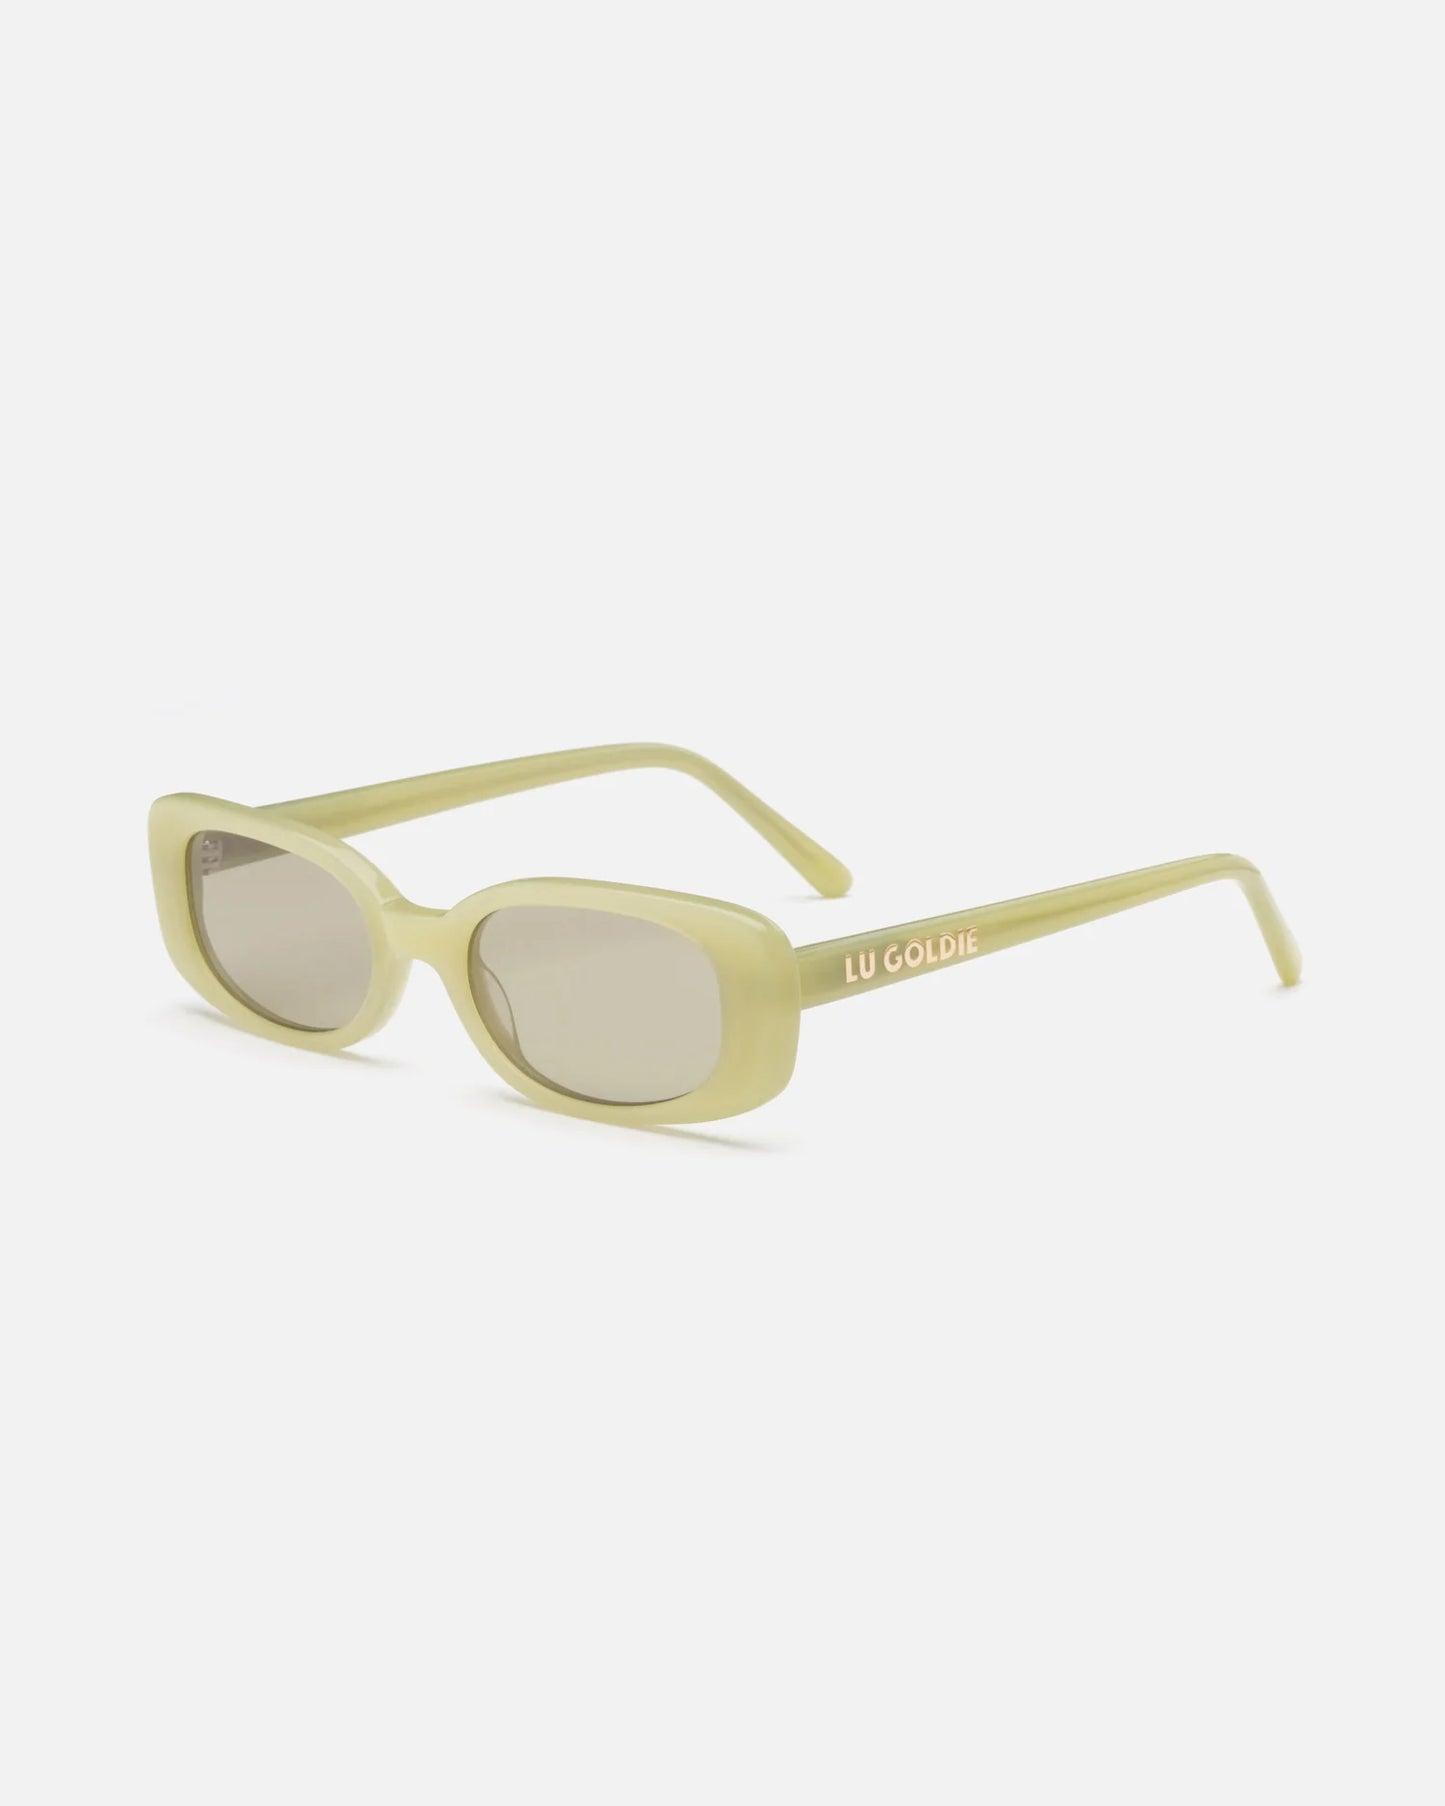 Solene - Matcha Sunglasses